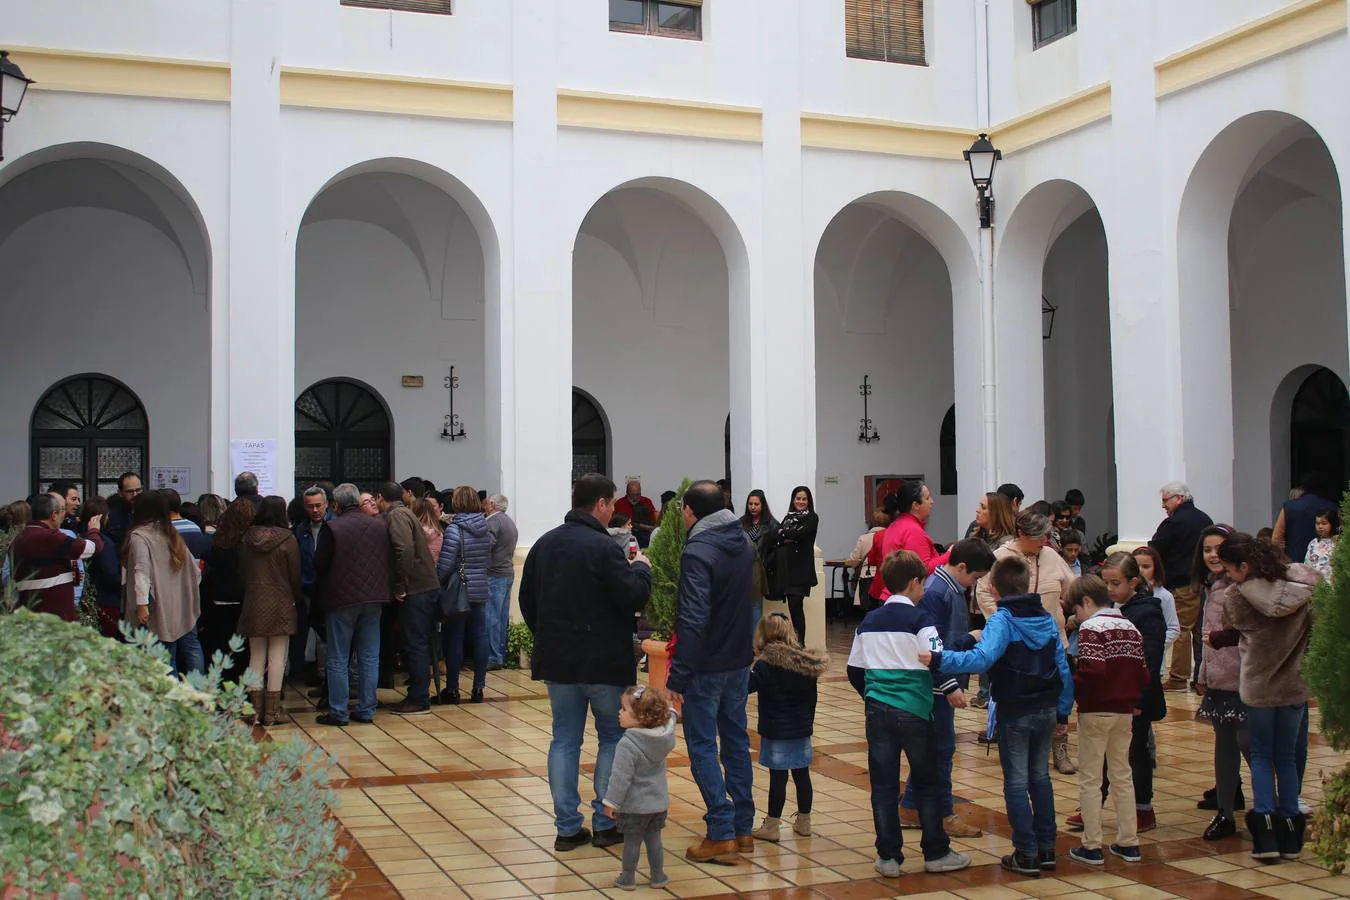 Mucha participación en la 'Tapa solidaria' organizada por Cáritas